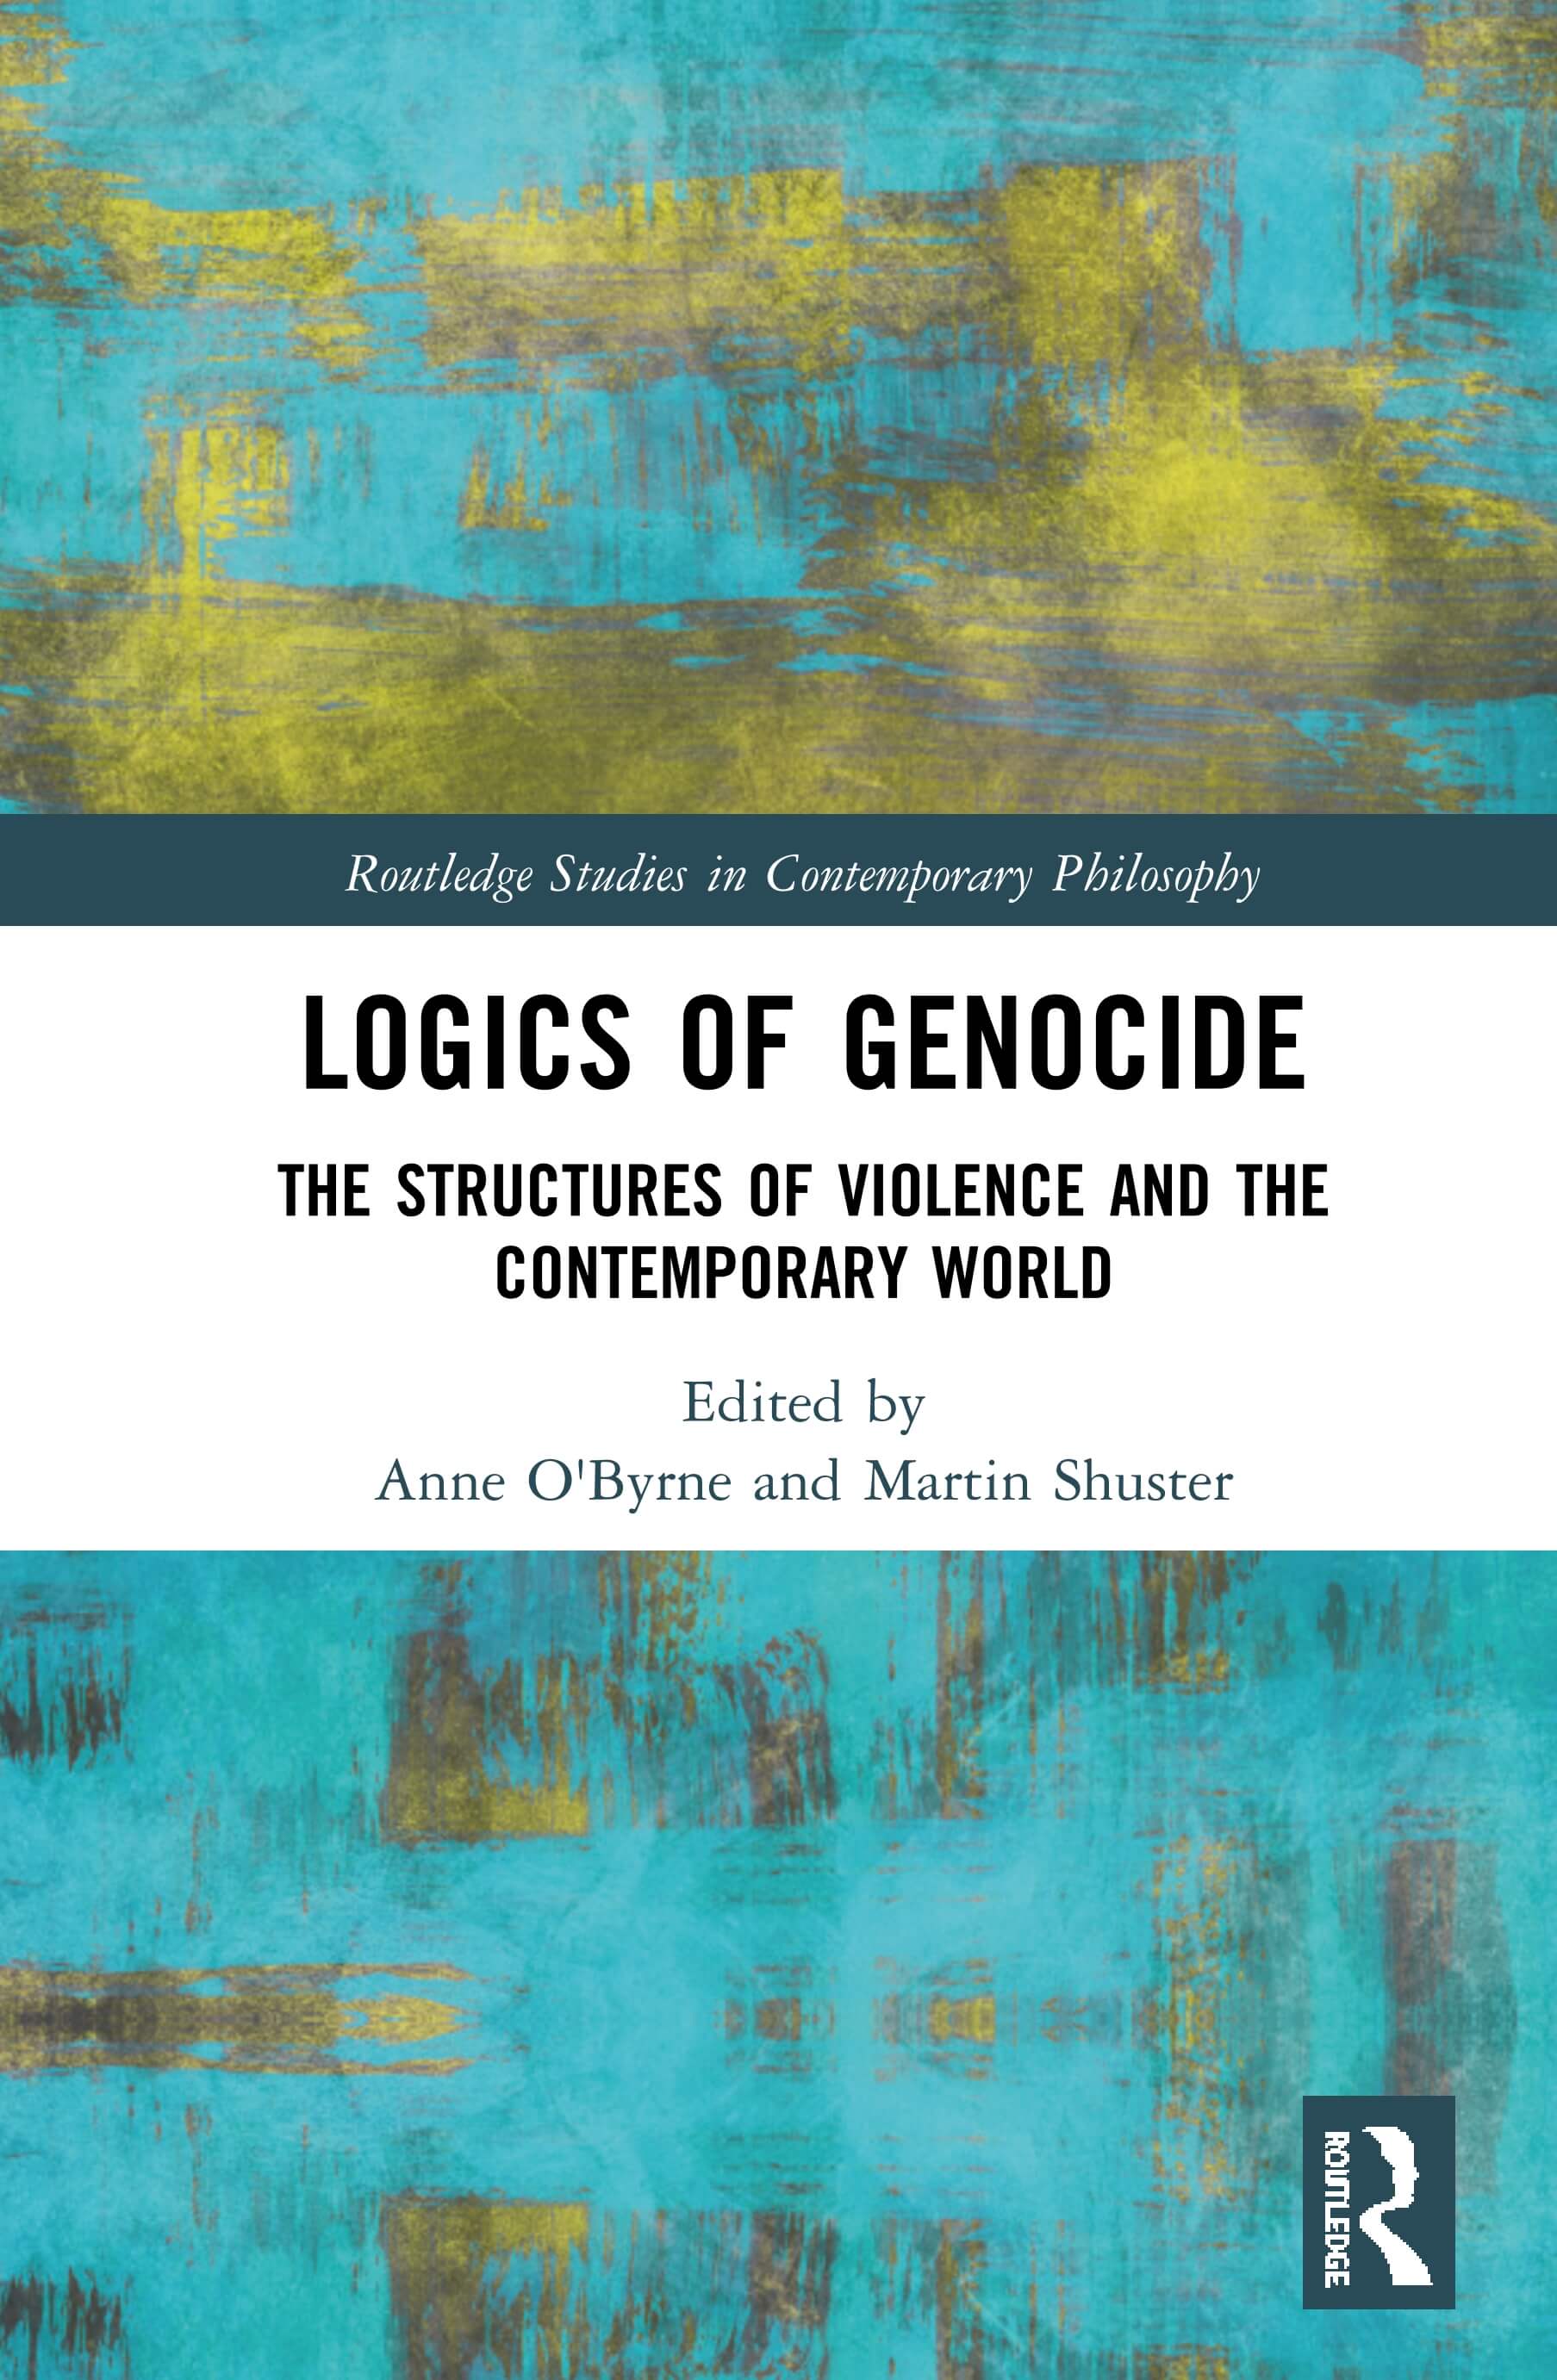 Logics of Genocide